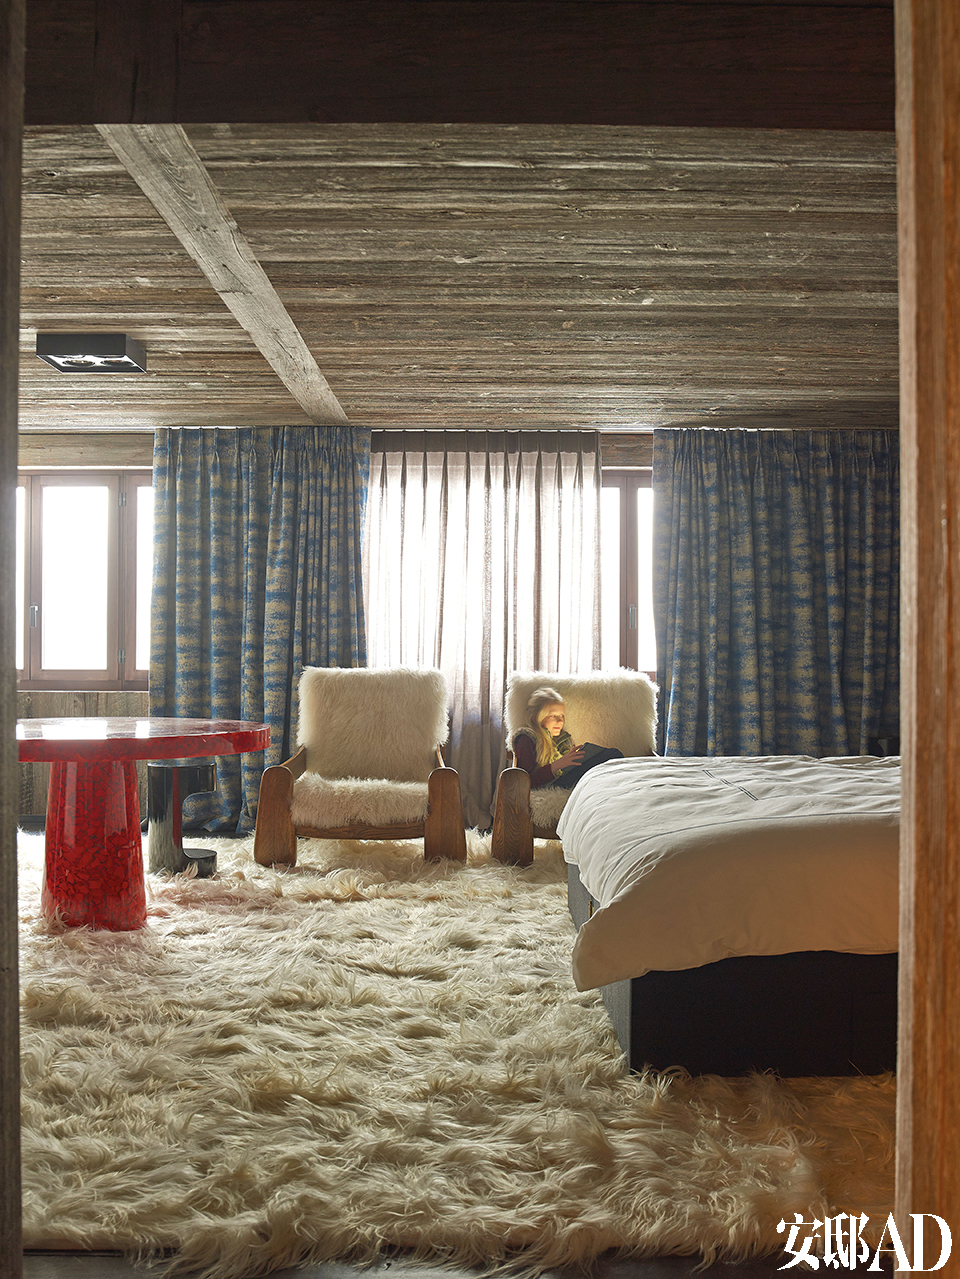 铺满地面和扶手椅的长山羊毛地毯显示出浓郁的北欧风情，窗帘和窗纱来自Jules et Jim Paris，红树脂片制成的桌子由Jean Brand设计，Atelier Janus出品。